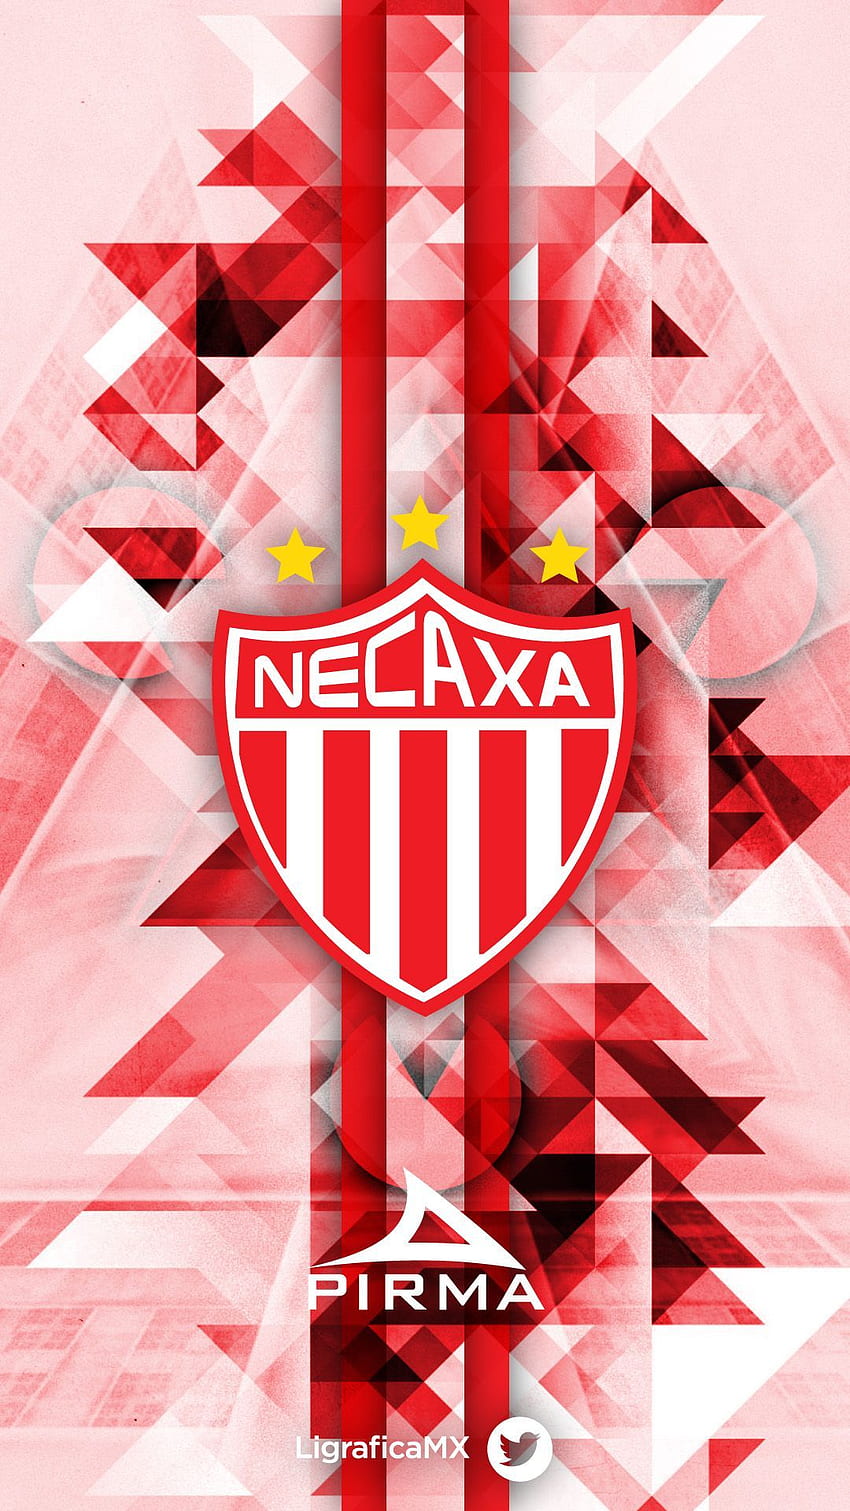 MX - NECAXA Fuerza Rayos のアイデア。 フットボル、レアル・マドリードのロゴ、熱いサッカーファン HD電話の壁紙